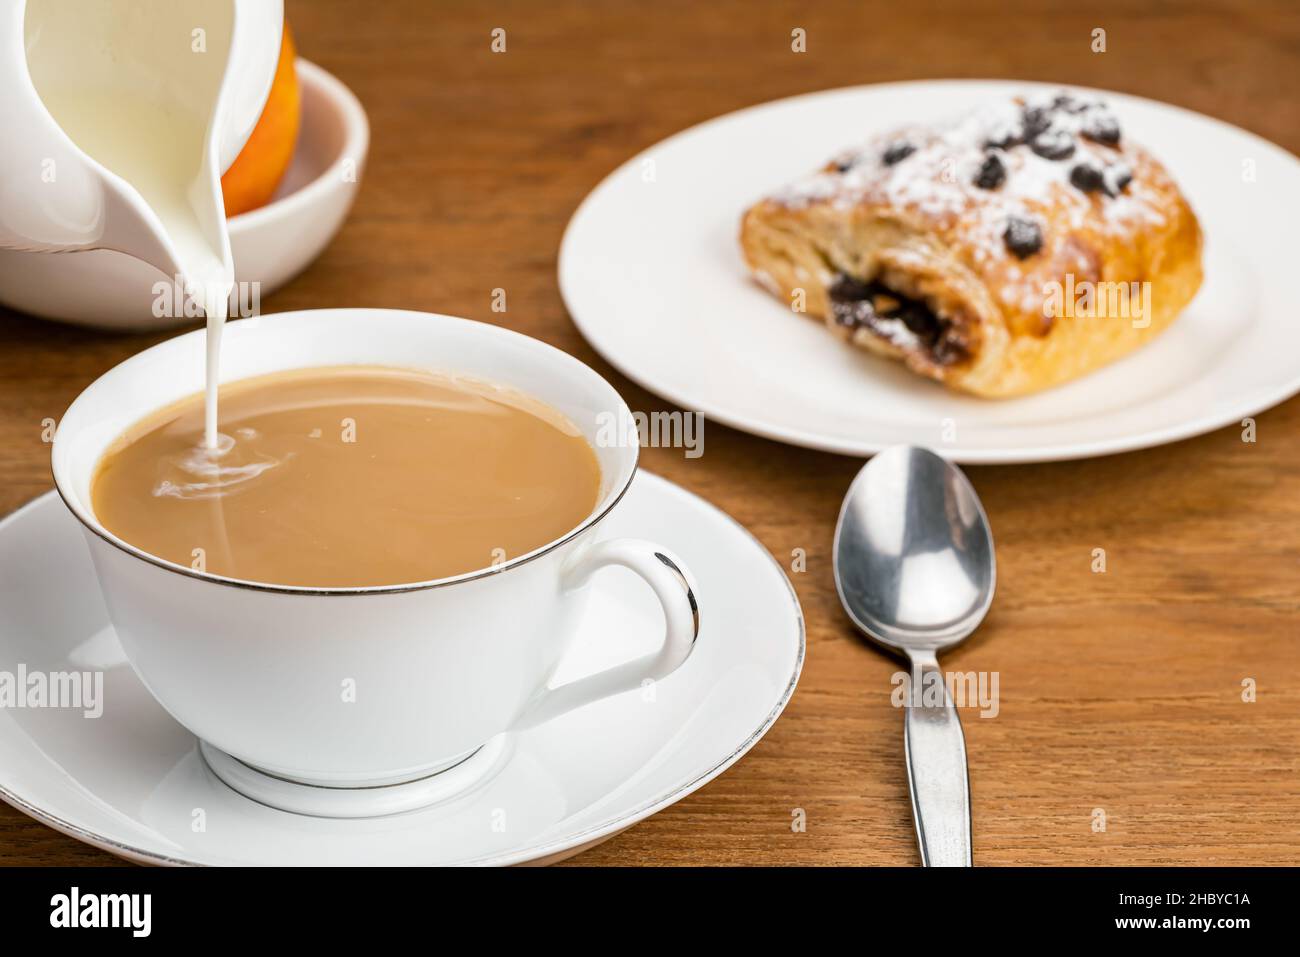 Gießen Sie frische Milch in Kaffee in weißen Keramik-Tasse auf Keramik-Untertasse mit Dänischem Gebäck gefüllt mit Schokoladencreme Belag mit Schokolade Chips und Stockfoto